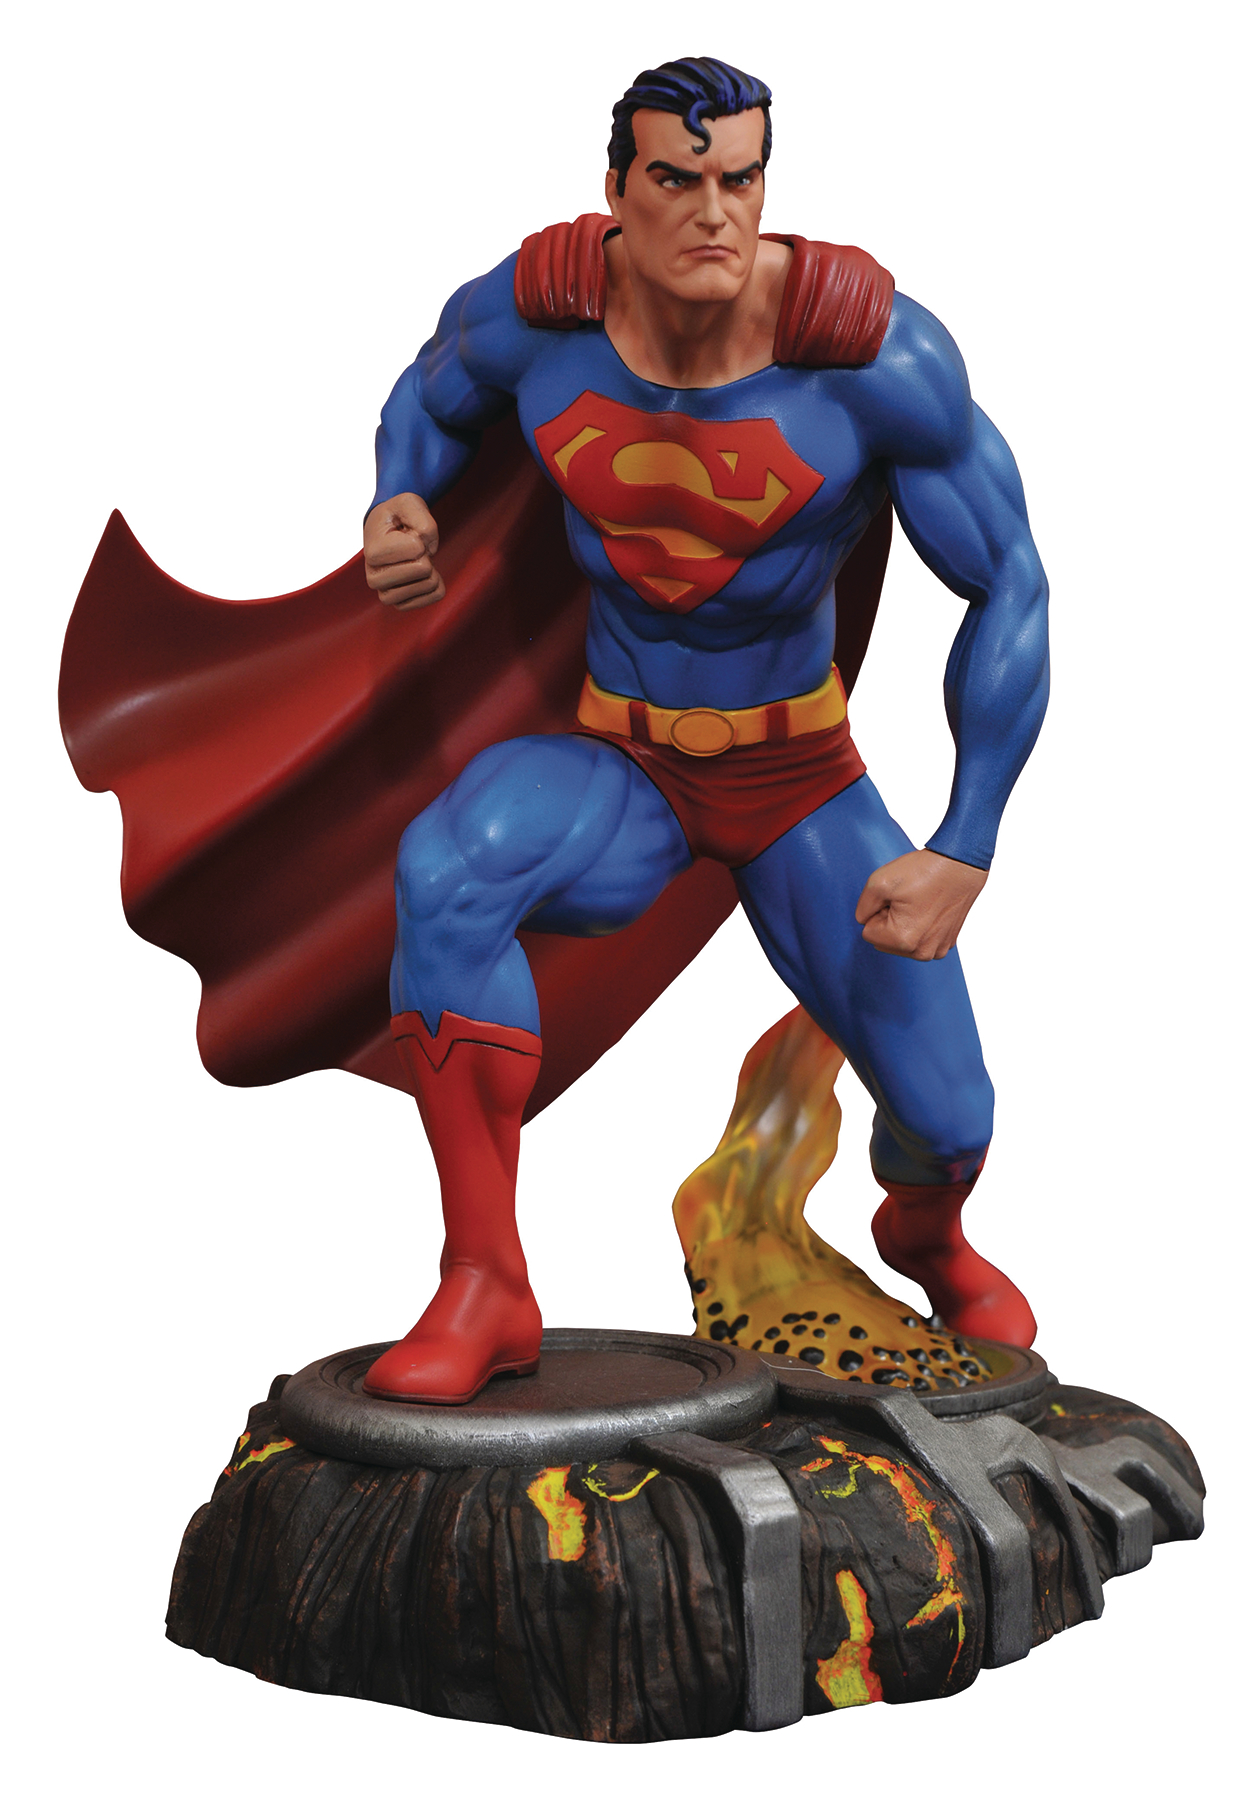 DC Superman Figure Justice League Action Figure Super Man PVC Collectible Model